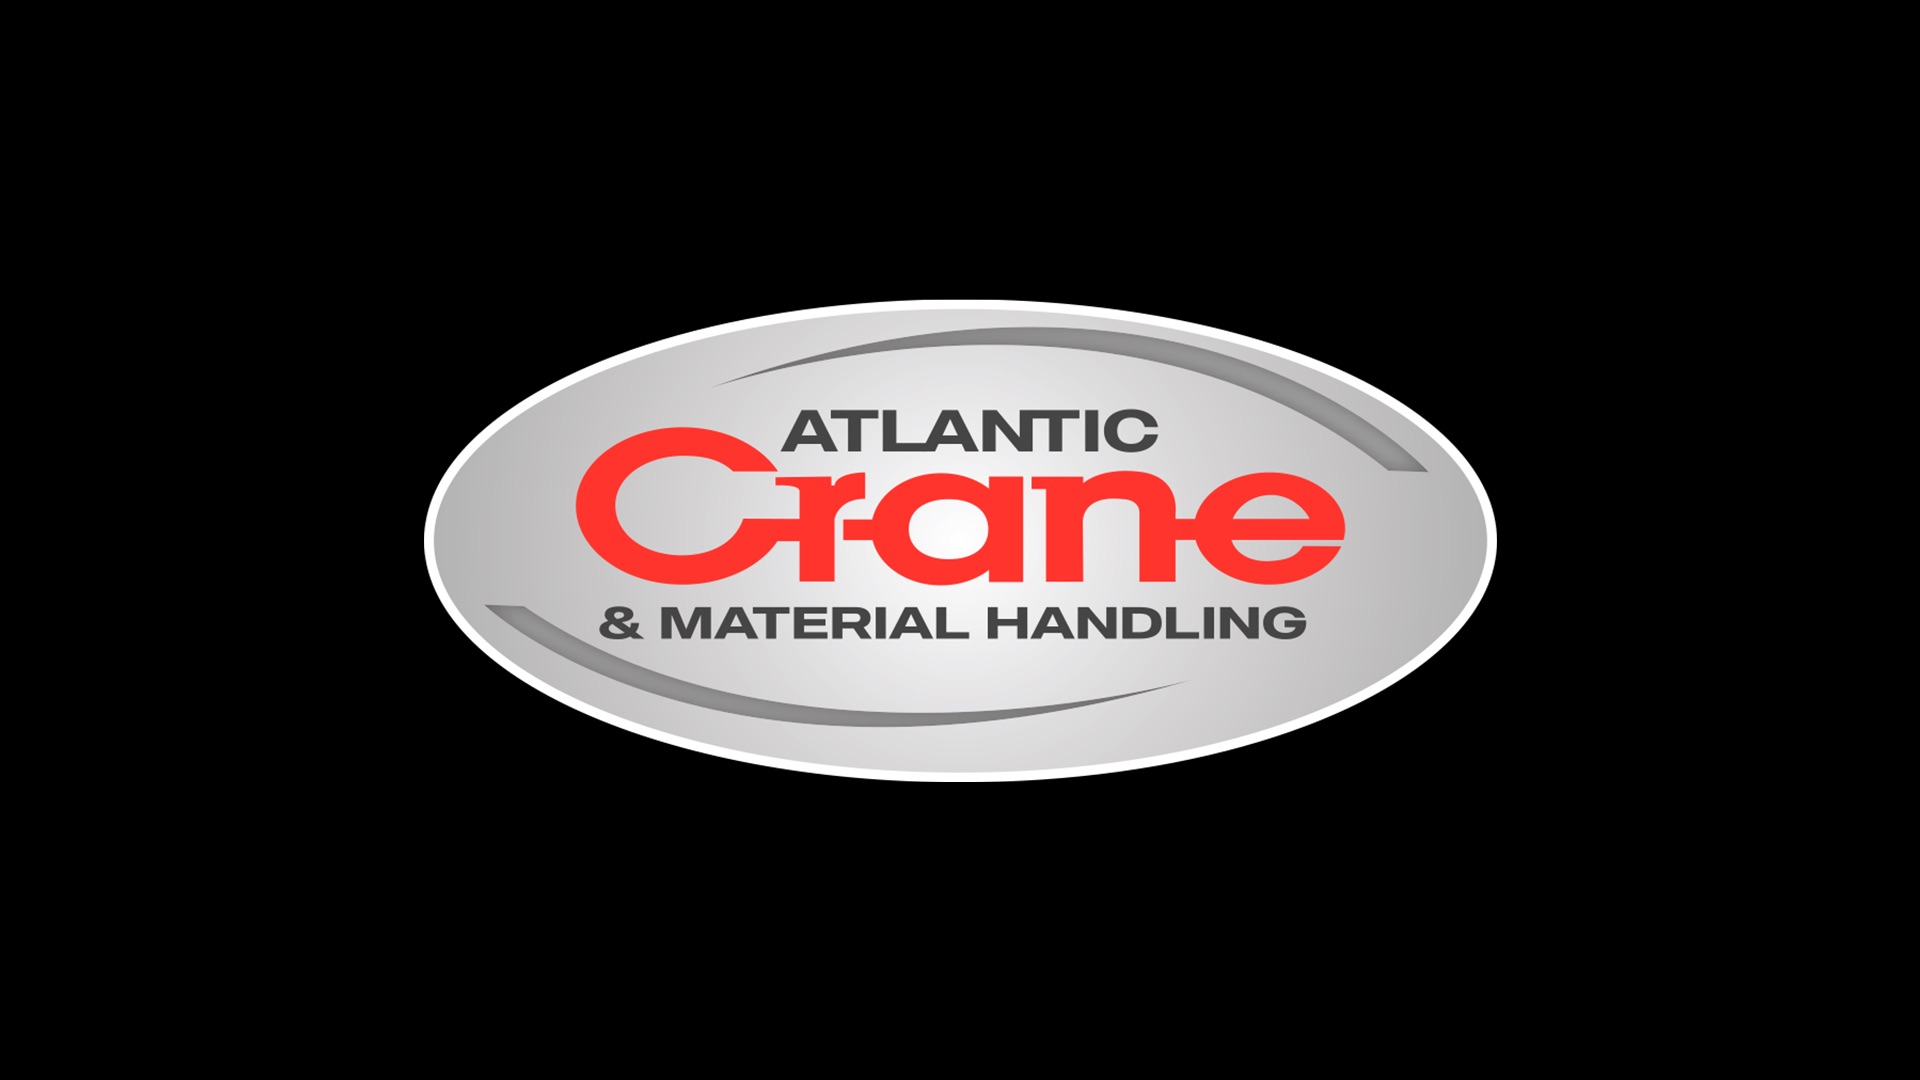 Atlantic Crane & Material Handling